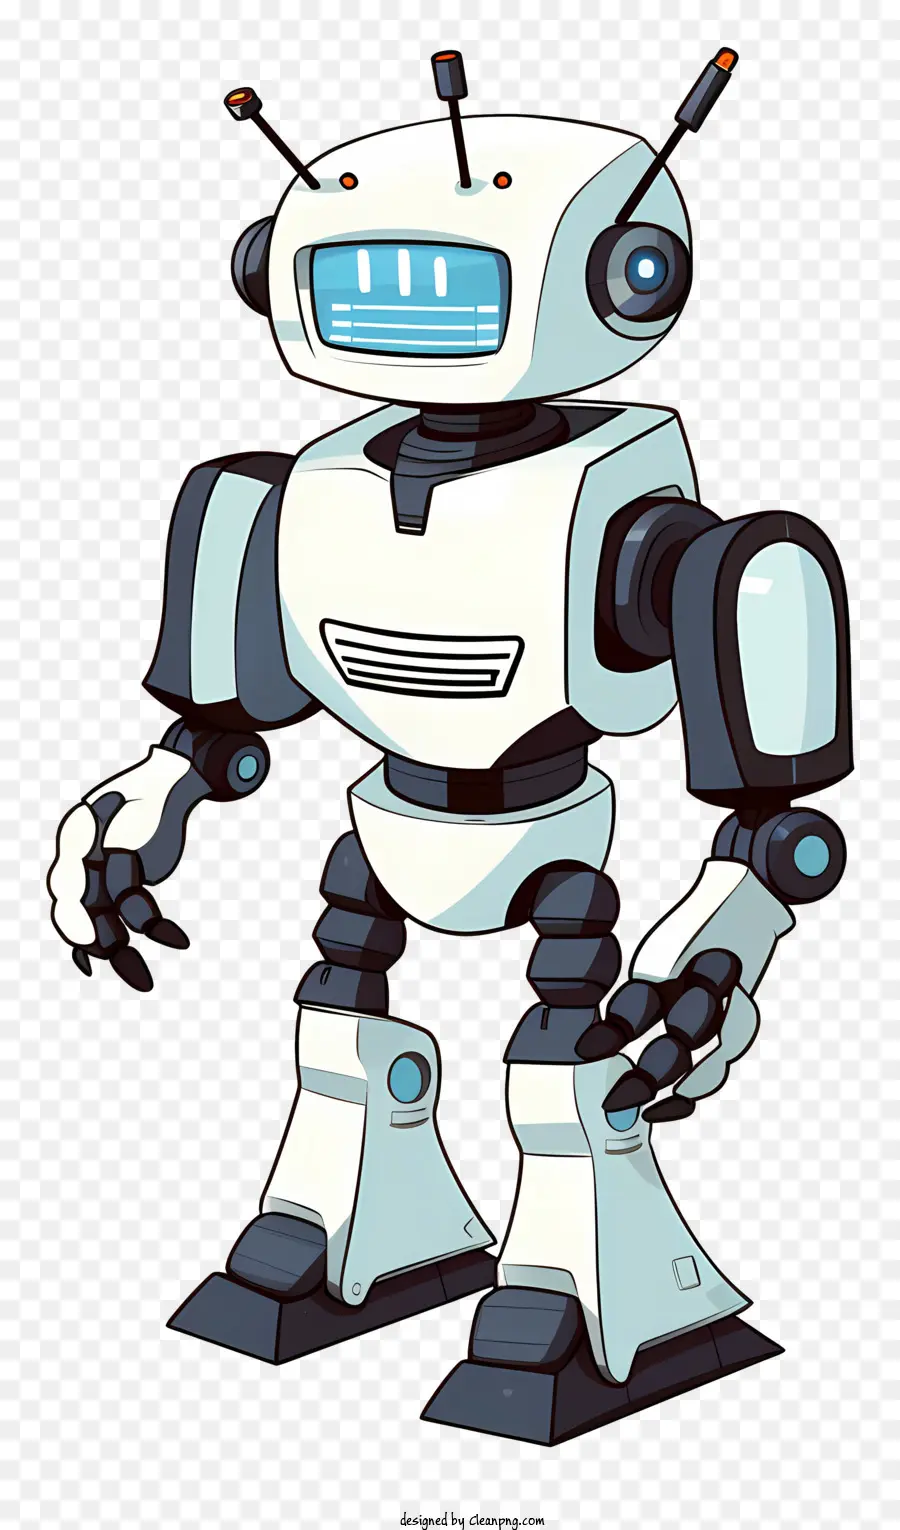 nhân vật robot hoạt hình robot màu trắng và đen với robot mắt lớn với nhân vật robot đứng miệng nhỏ - Nhân vật robot hoạt hình với trang phục màu đen và trắng